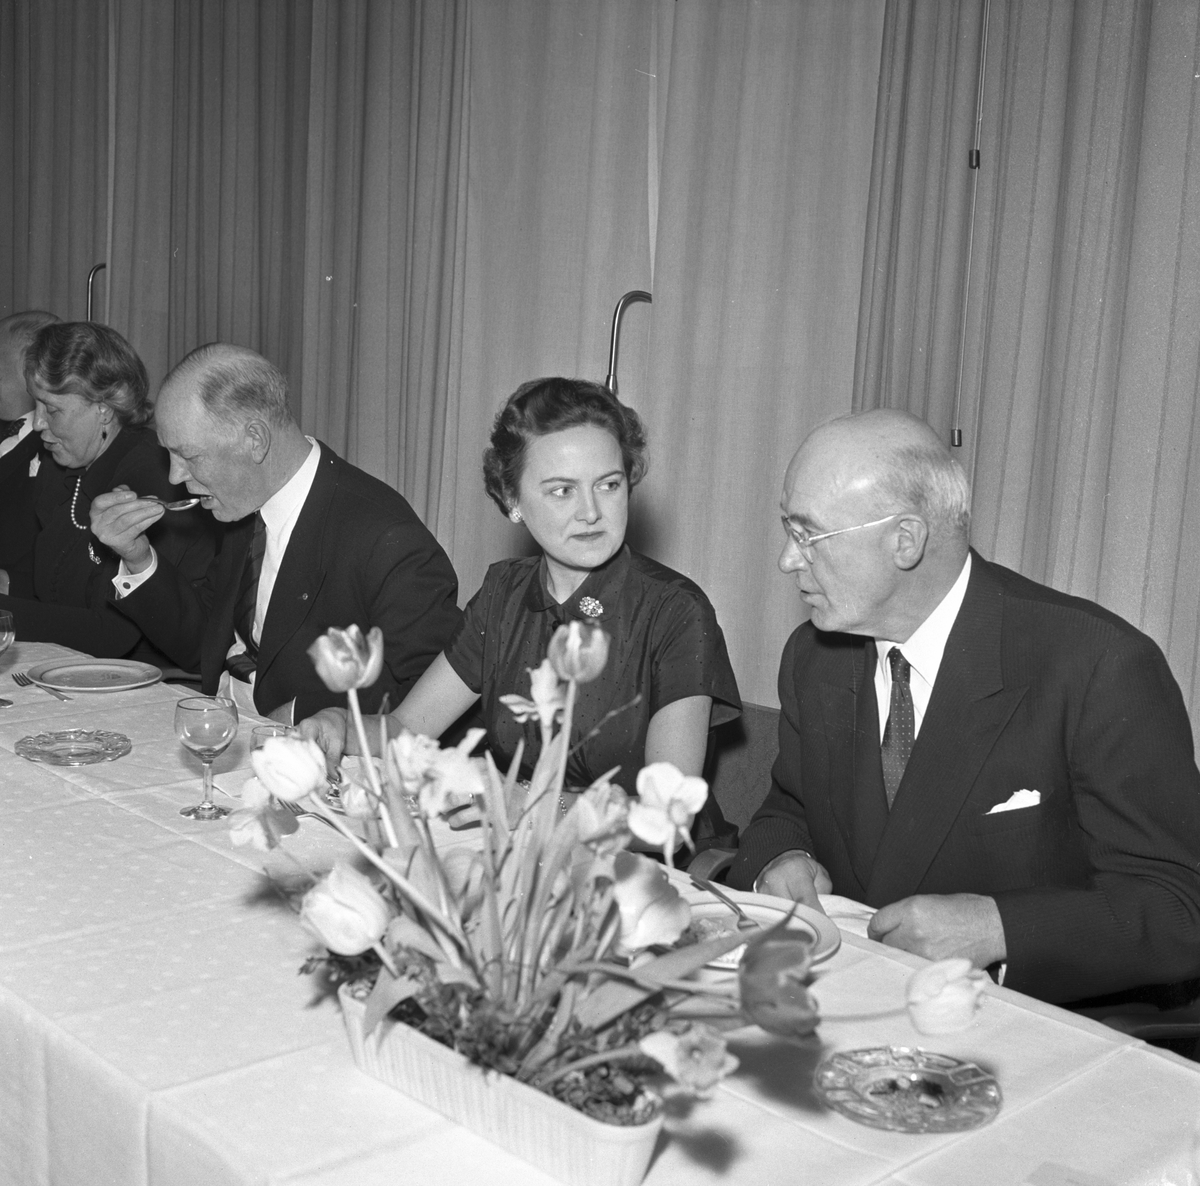 Bankdirektör Lindahl
Svenska Handelsbanken på Baltic. 18 februari 1956.